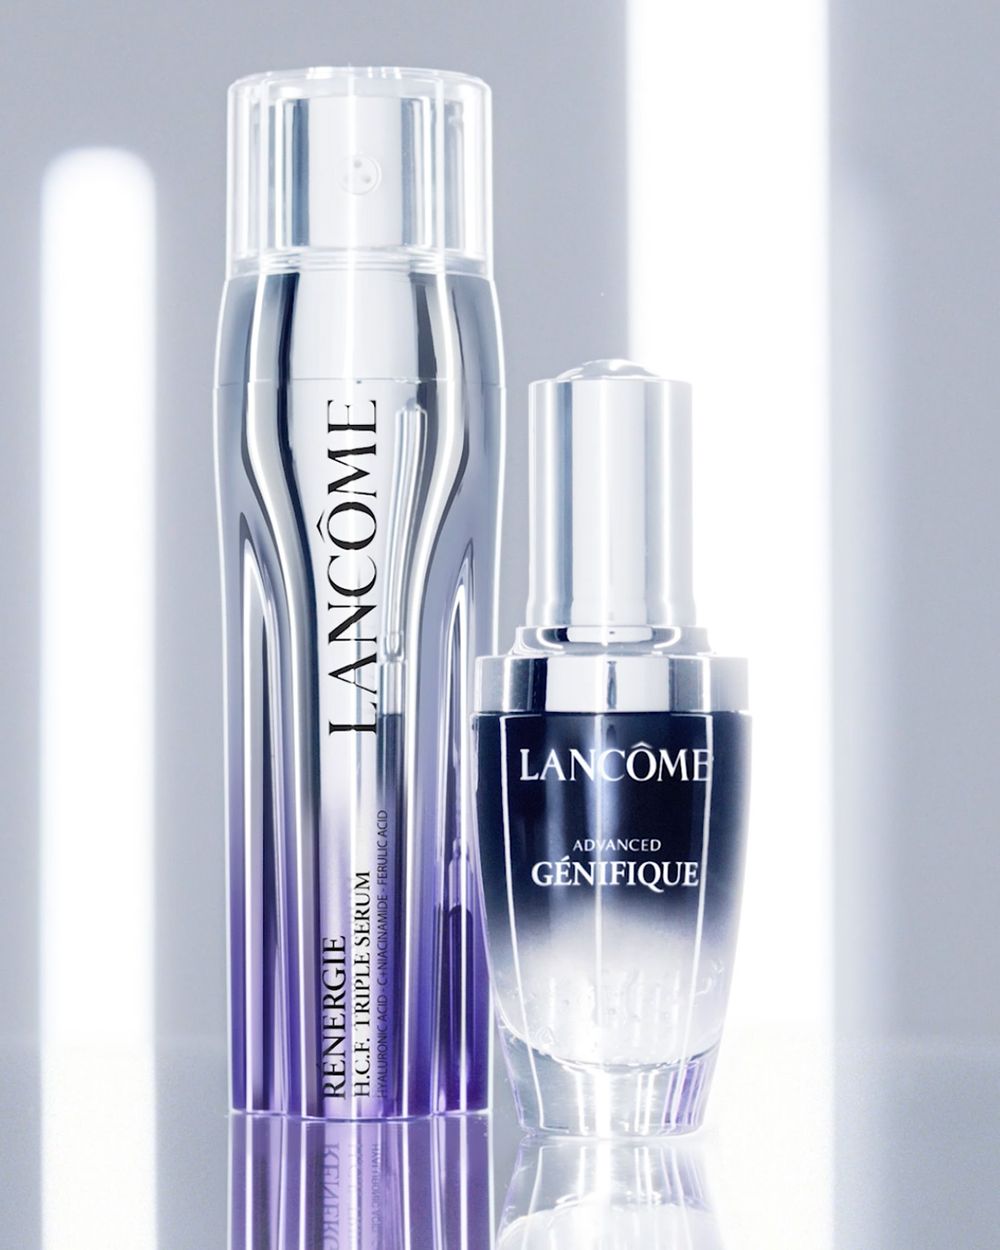 10 Best Lancôme Serums for All Skincare Concerns